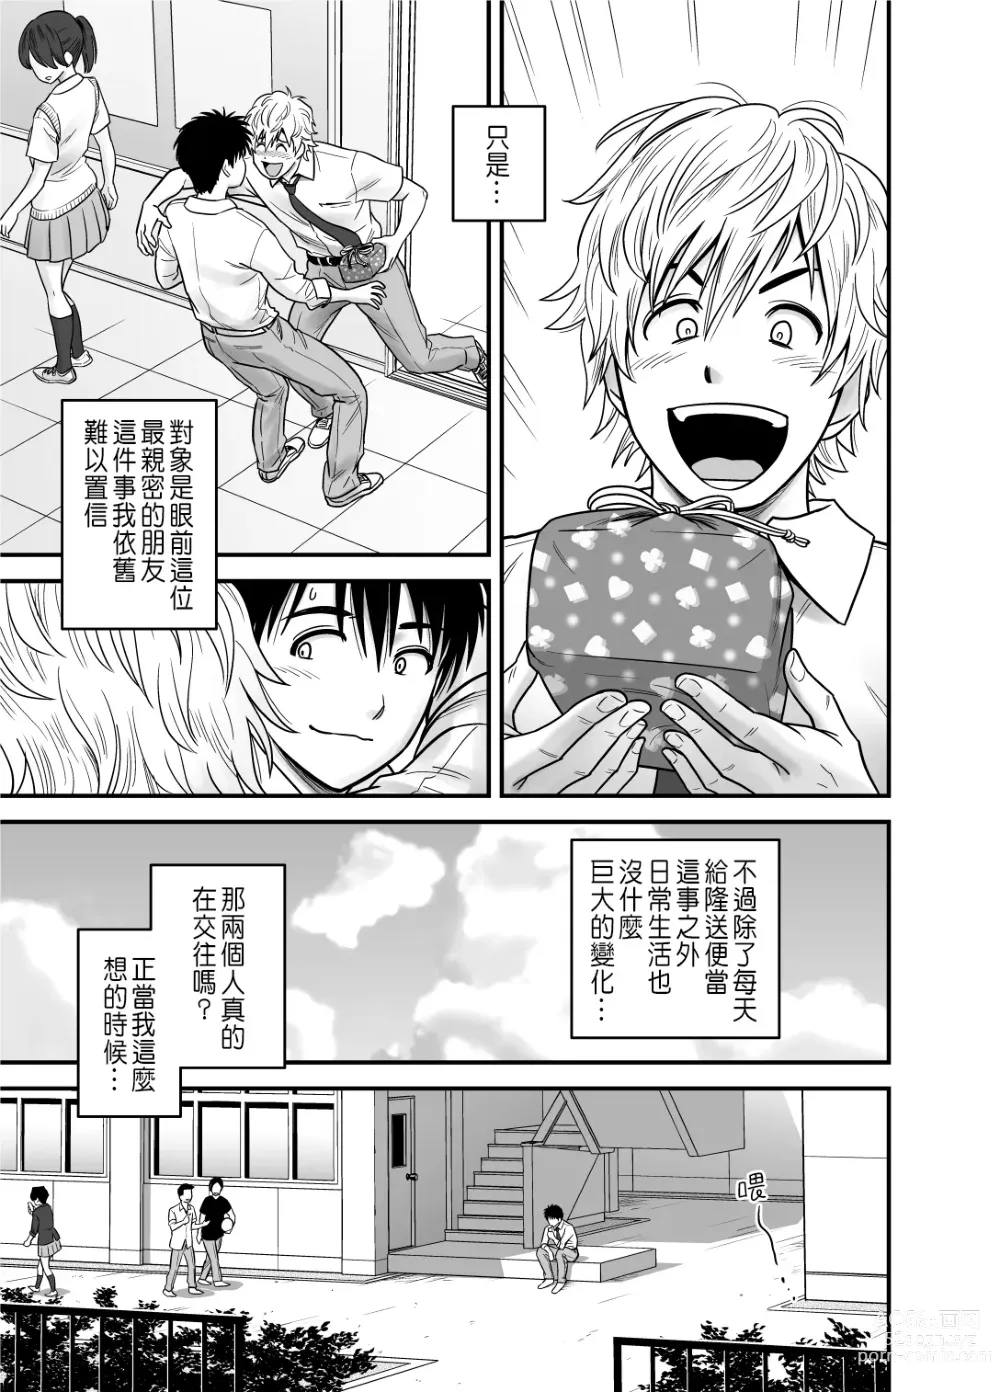 Page 17 of manga 母が友カノになったので1~3